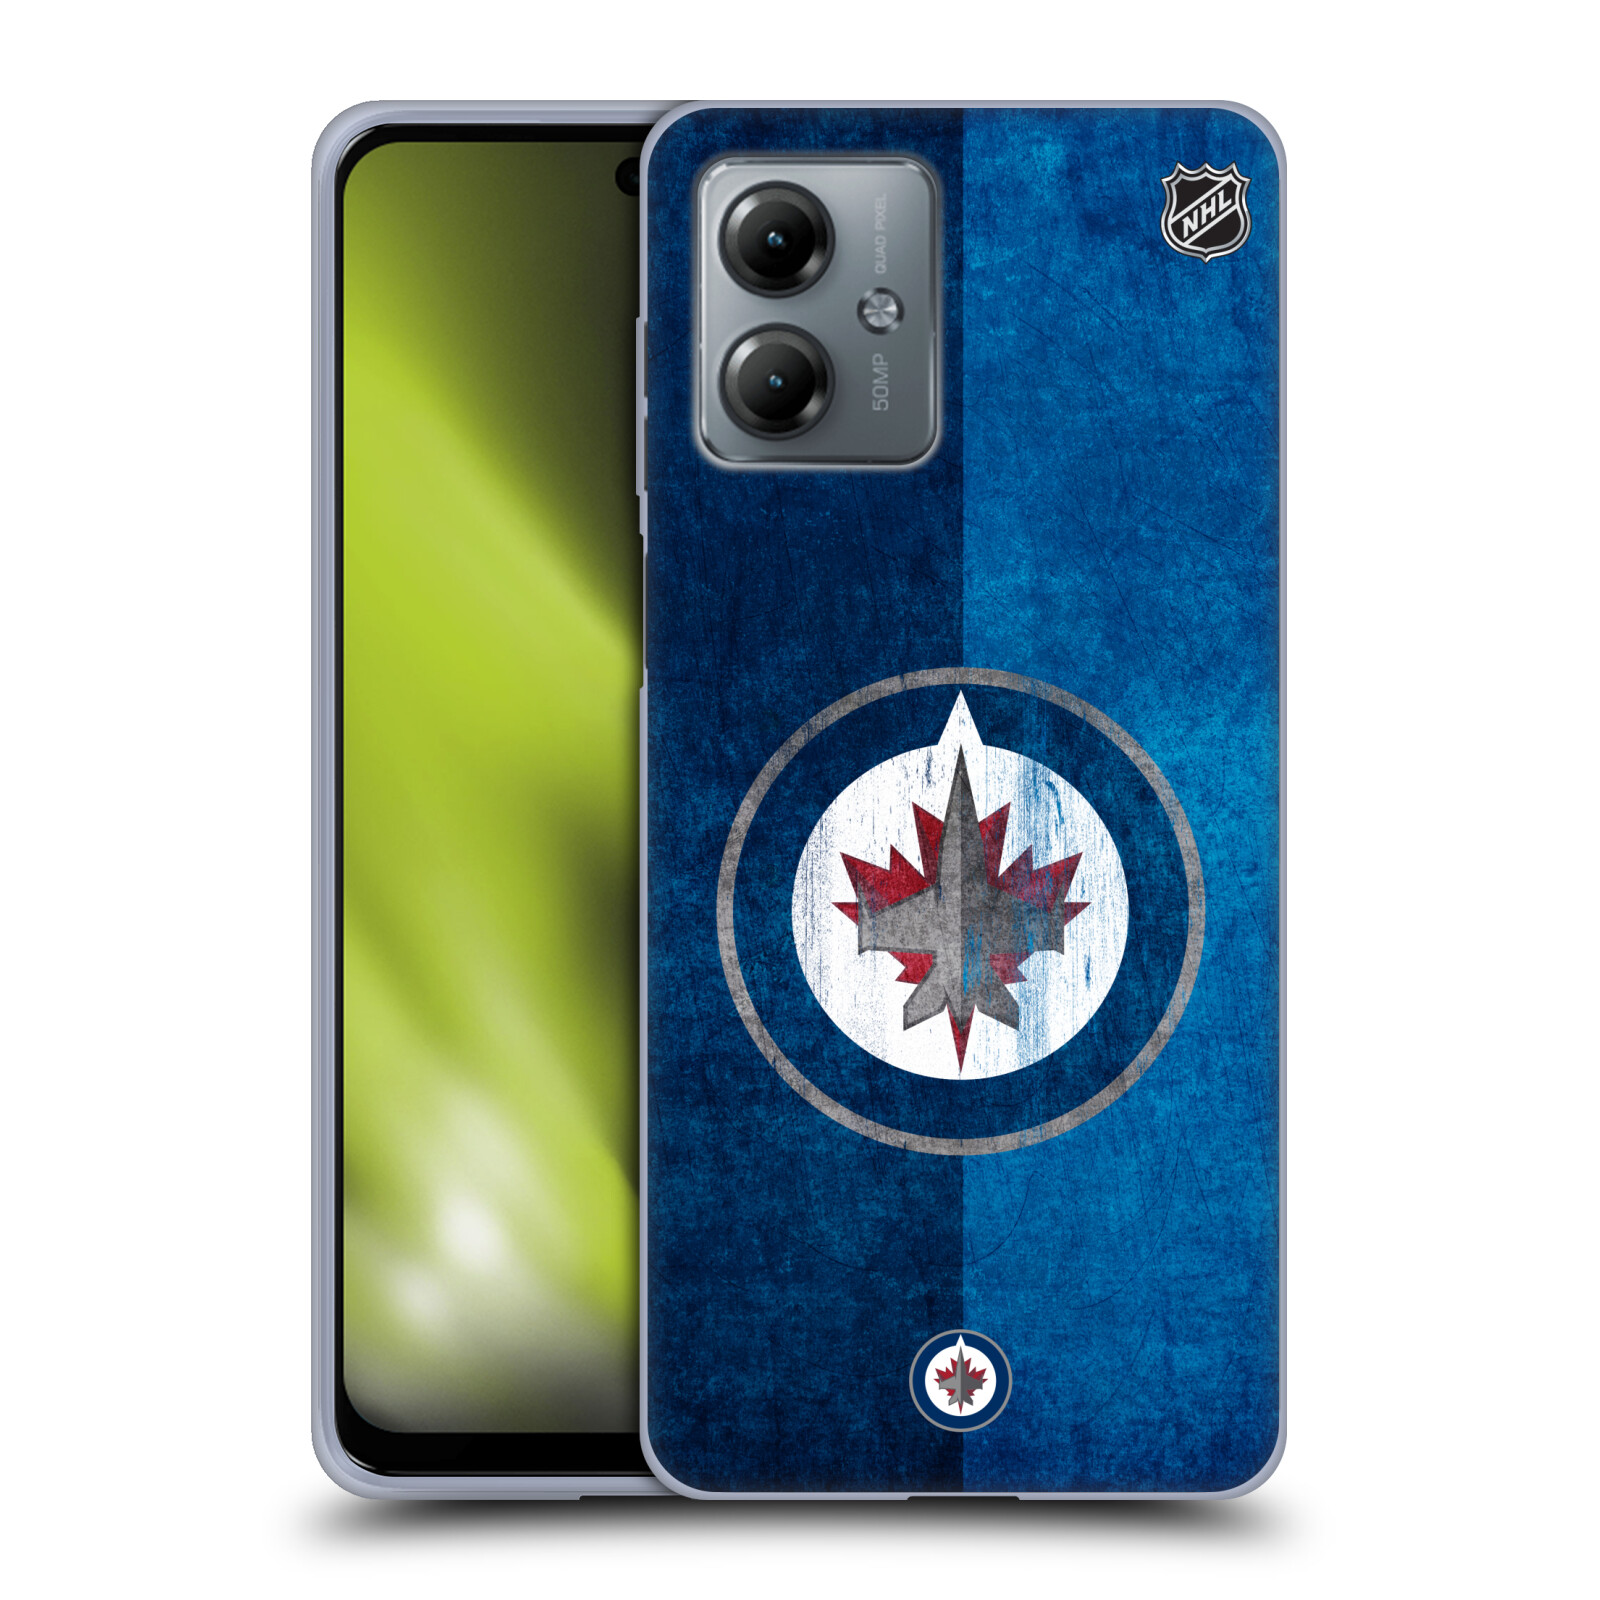 Silikonové pouzdro na mobil Motorola Moto G14 - NHL - Půlené logo Winnipeg Jets (Silikonový kryt, obal, pouzdro na mobilní telefon Motorola Moto G14 s licencovaným motivem NHL - Půlené logo Winnipeg Jets)